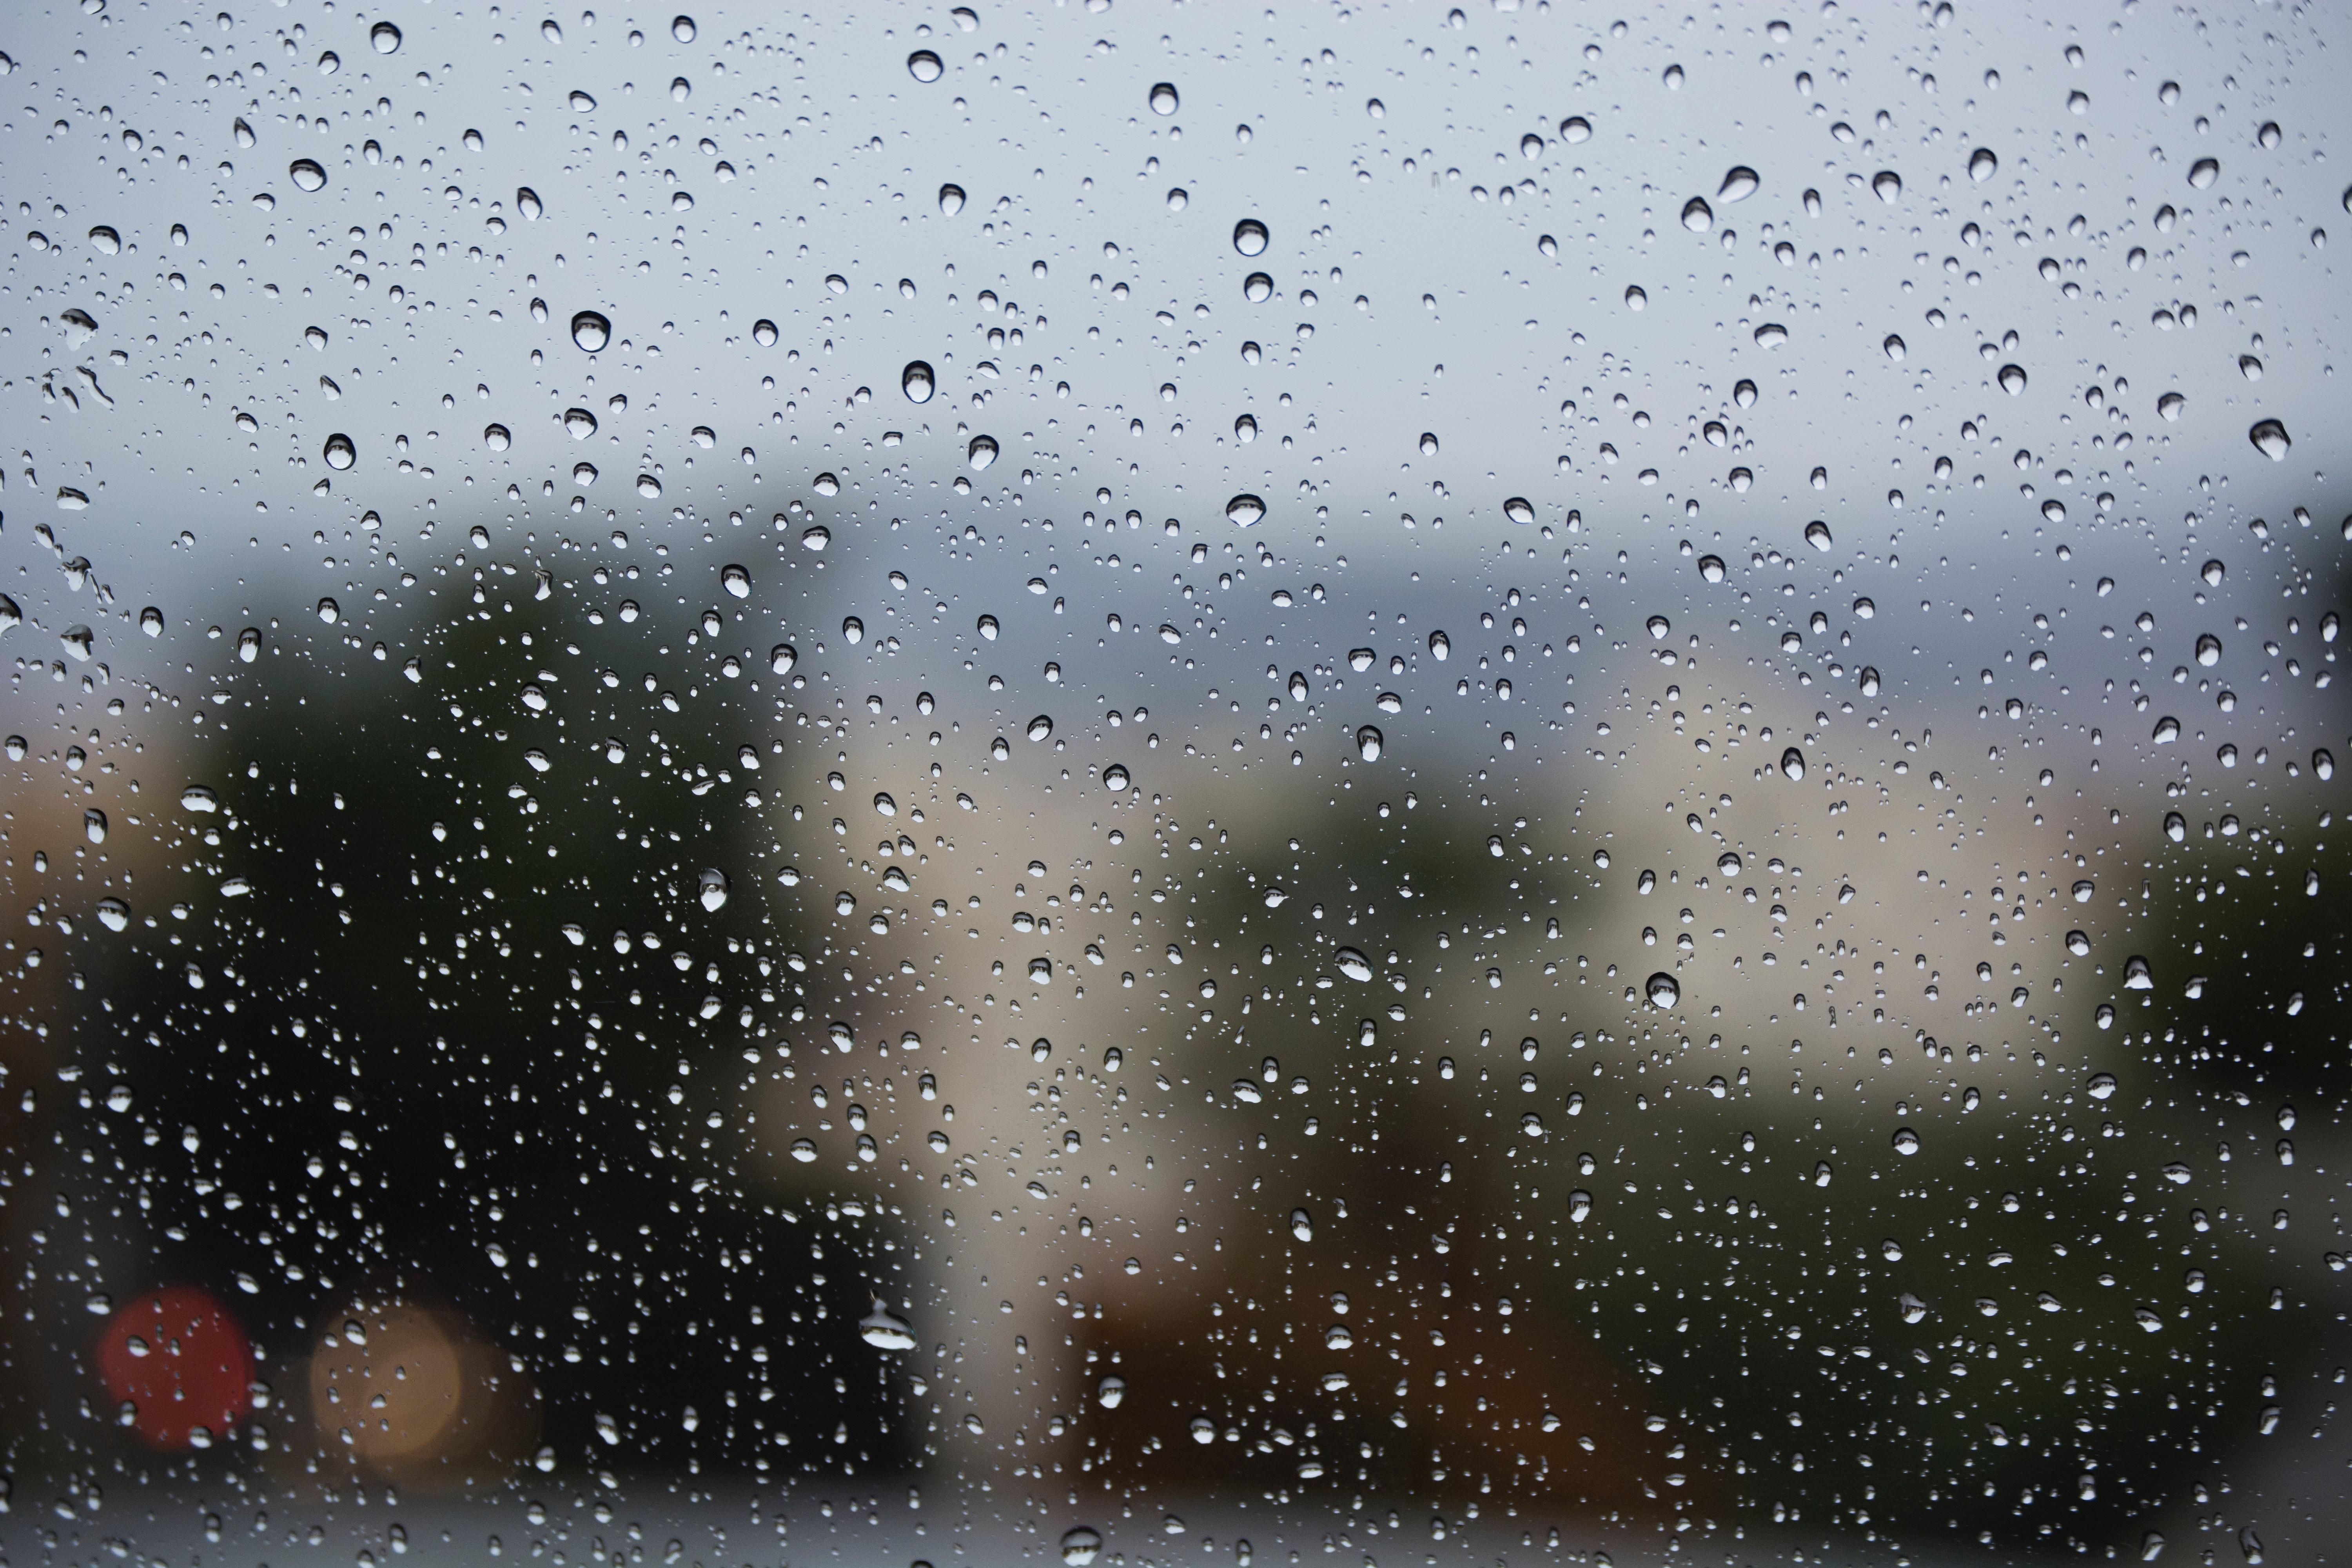 tapete hujan,nieseln,regen,wasser,fallen,himmel